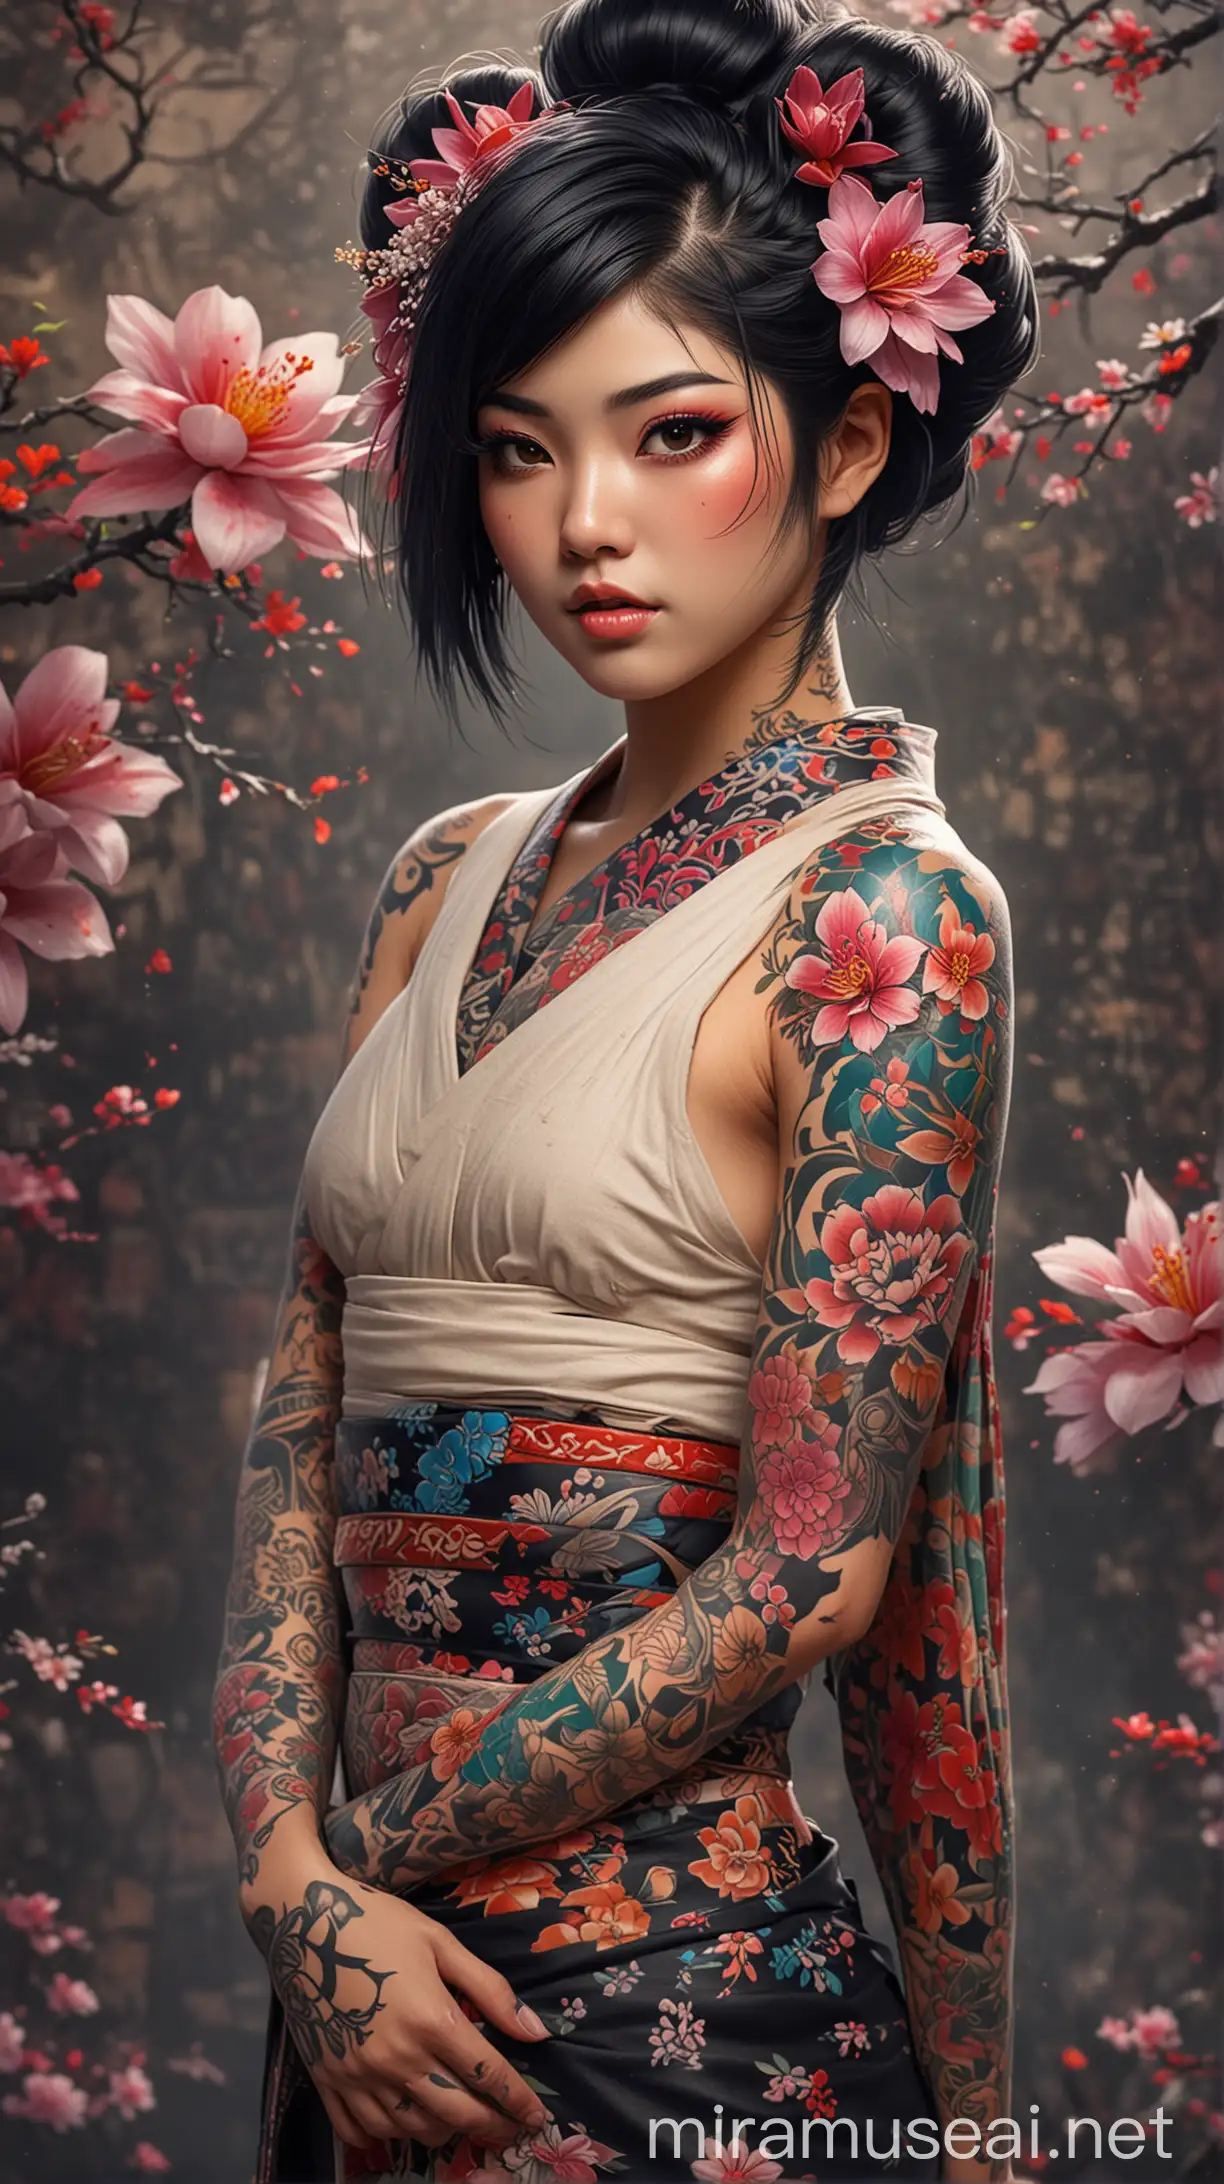 Pria muda geisha berotot berdiri berpose ,tato seluruh tubuh,sedikit pun tato menutupi seluruh tubuhnya, wajah tampan, dan rambut hitam undercut,desain bunga berwarna-warni wallpaper bunga,latar belakang dalam gaya anime fantasi ilustrasion, --v 6.0 --gaya mentah - -s 130 --ar 35:64 ultra HDR extreme 